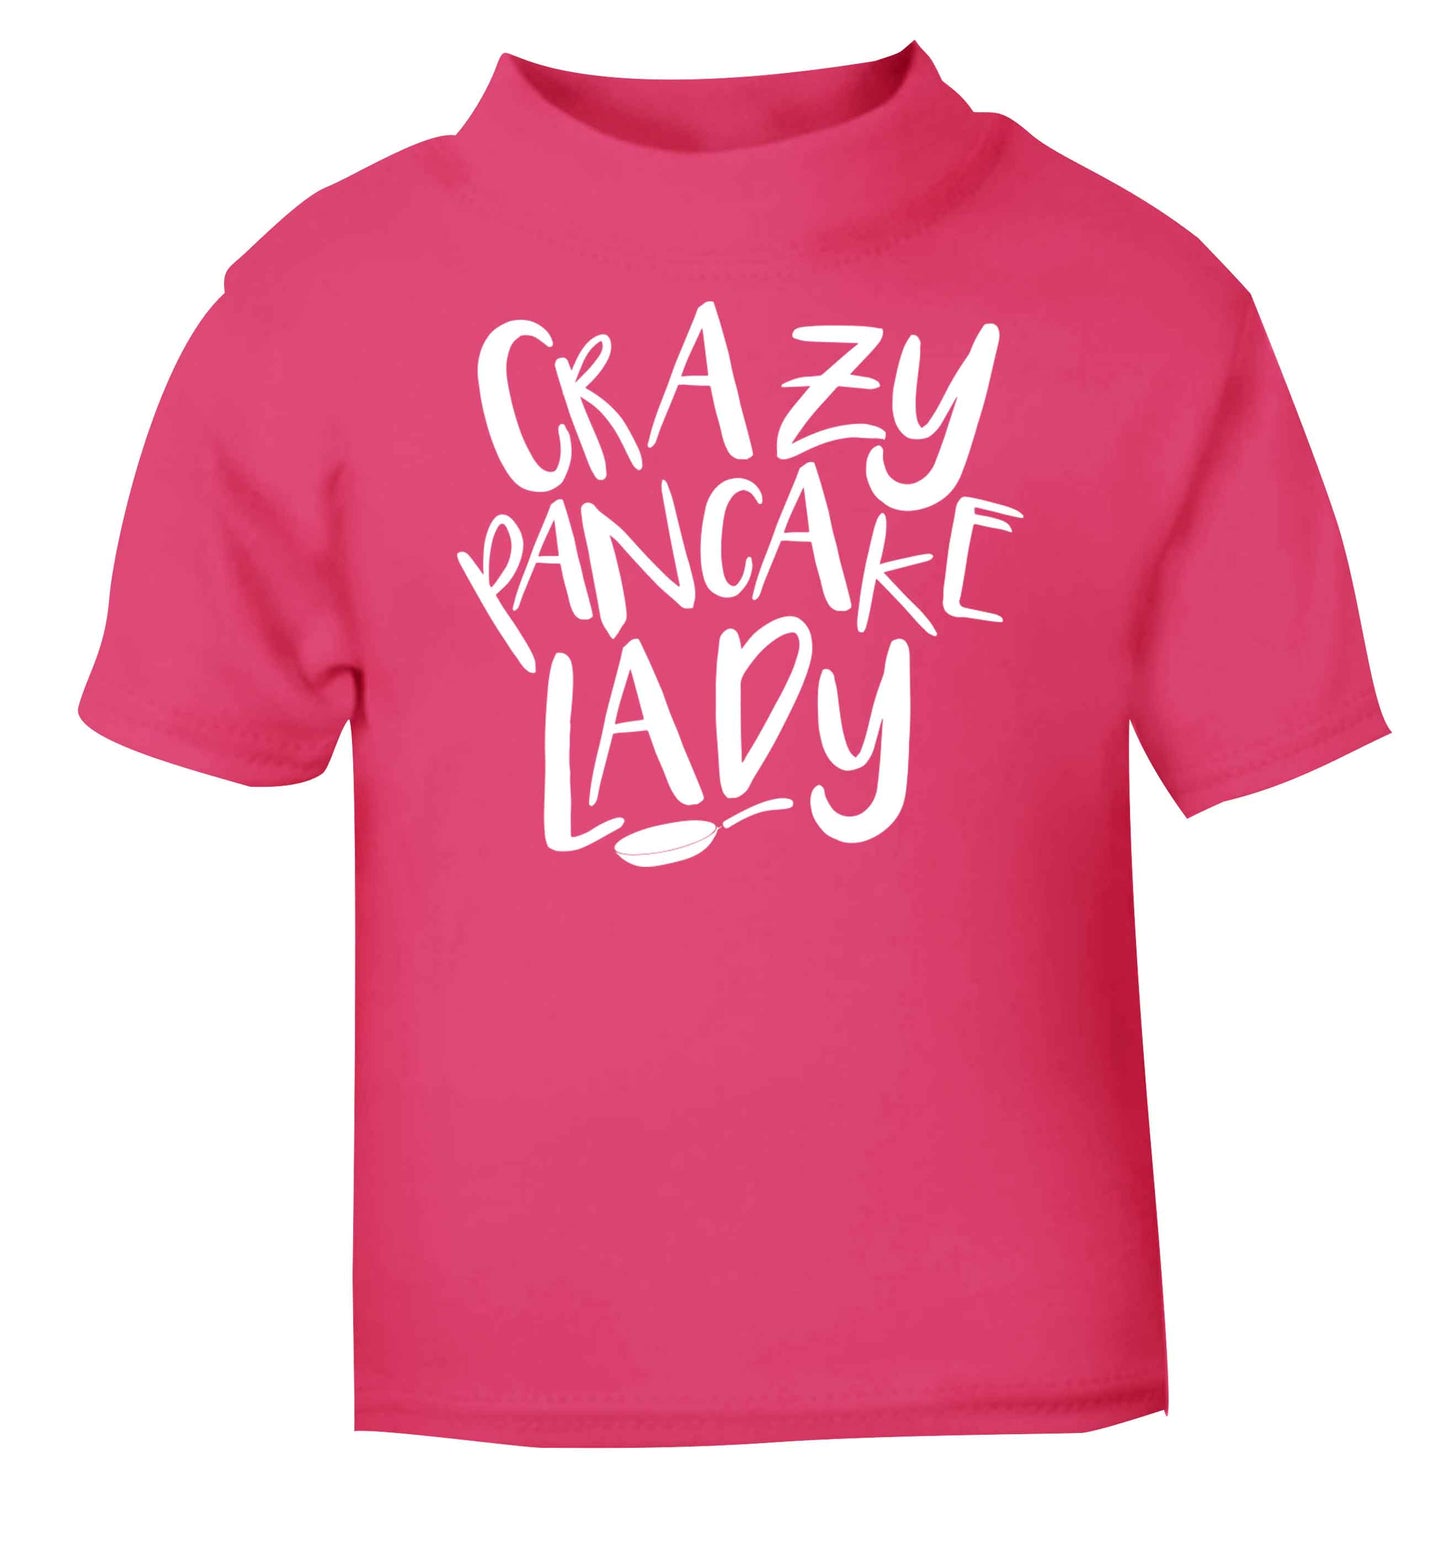 Crazy pancake lady pink baby toddler Tshirt 2 Years